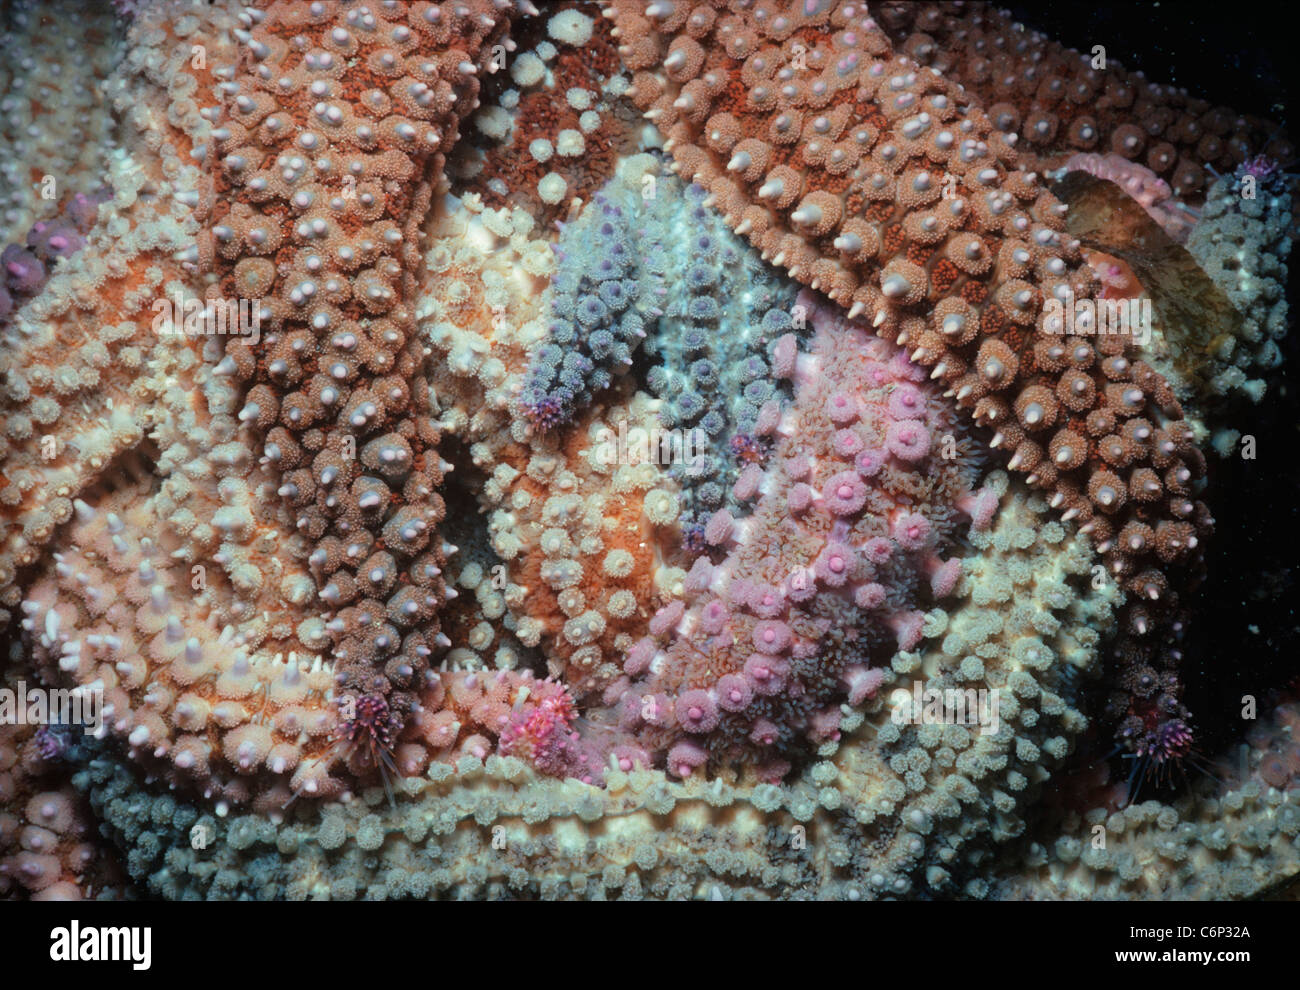 Le nord de l'étoile de mer (Asterias vulgaris) se nourrissent de moules. Ouessant, Bretagne, France, Océan Atlantique. Banque D'Images